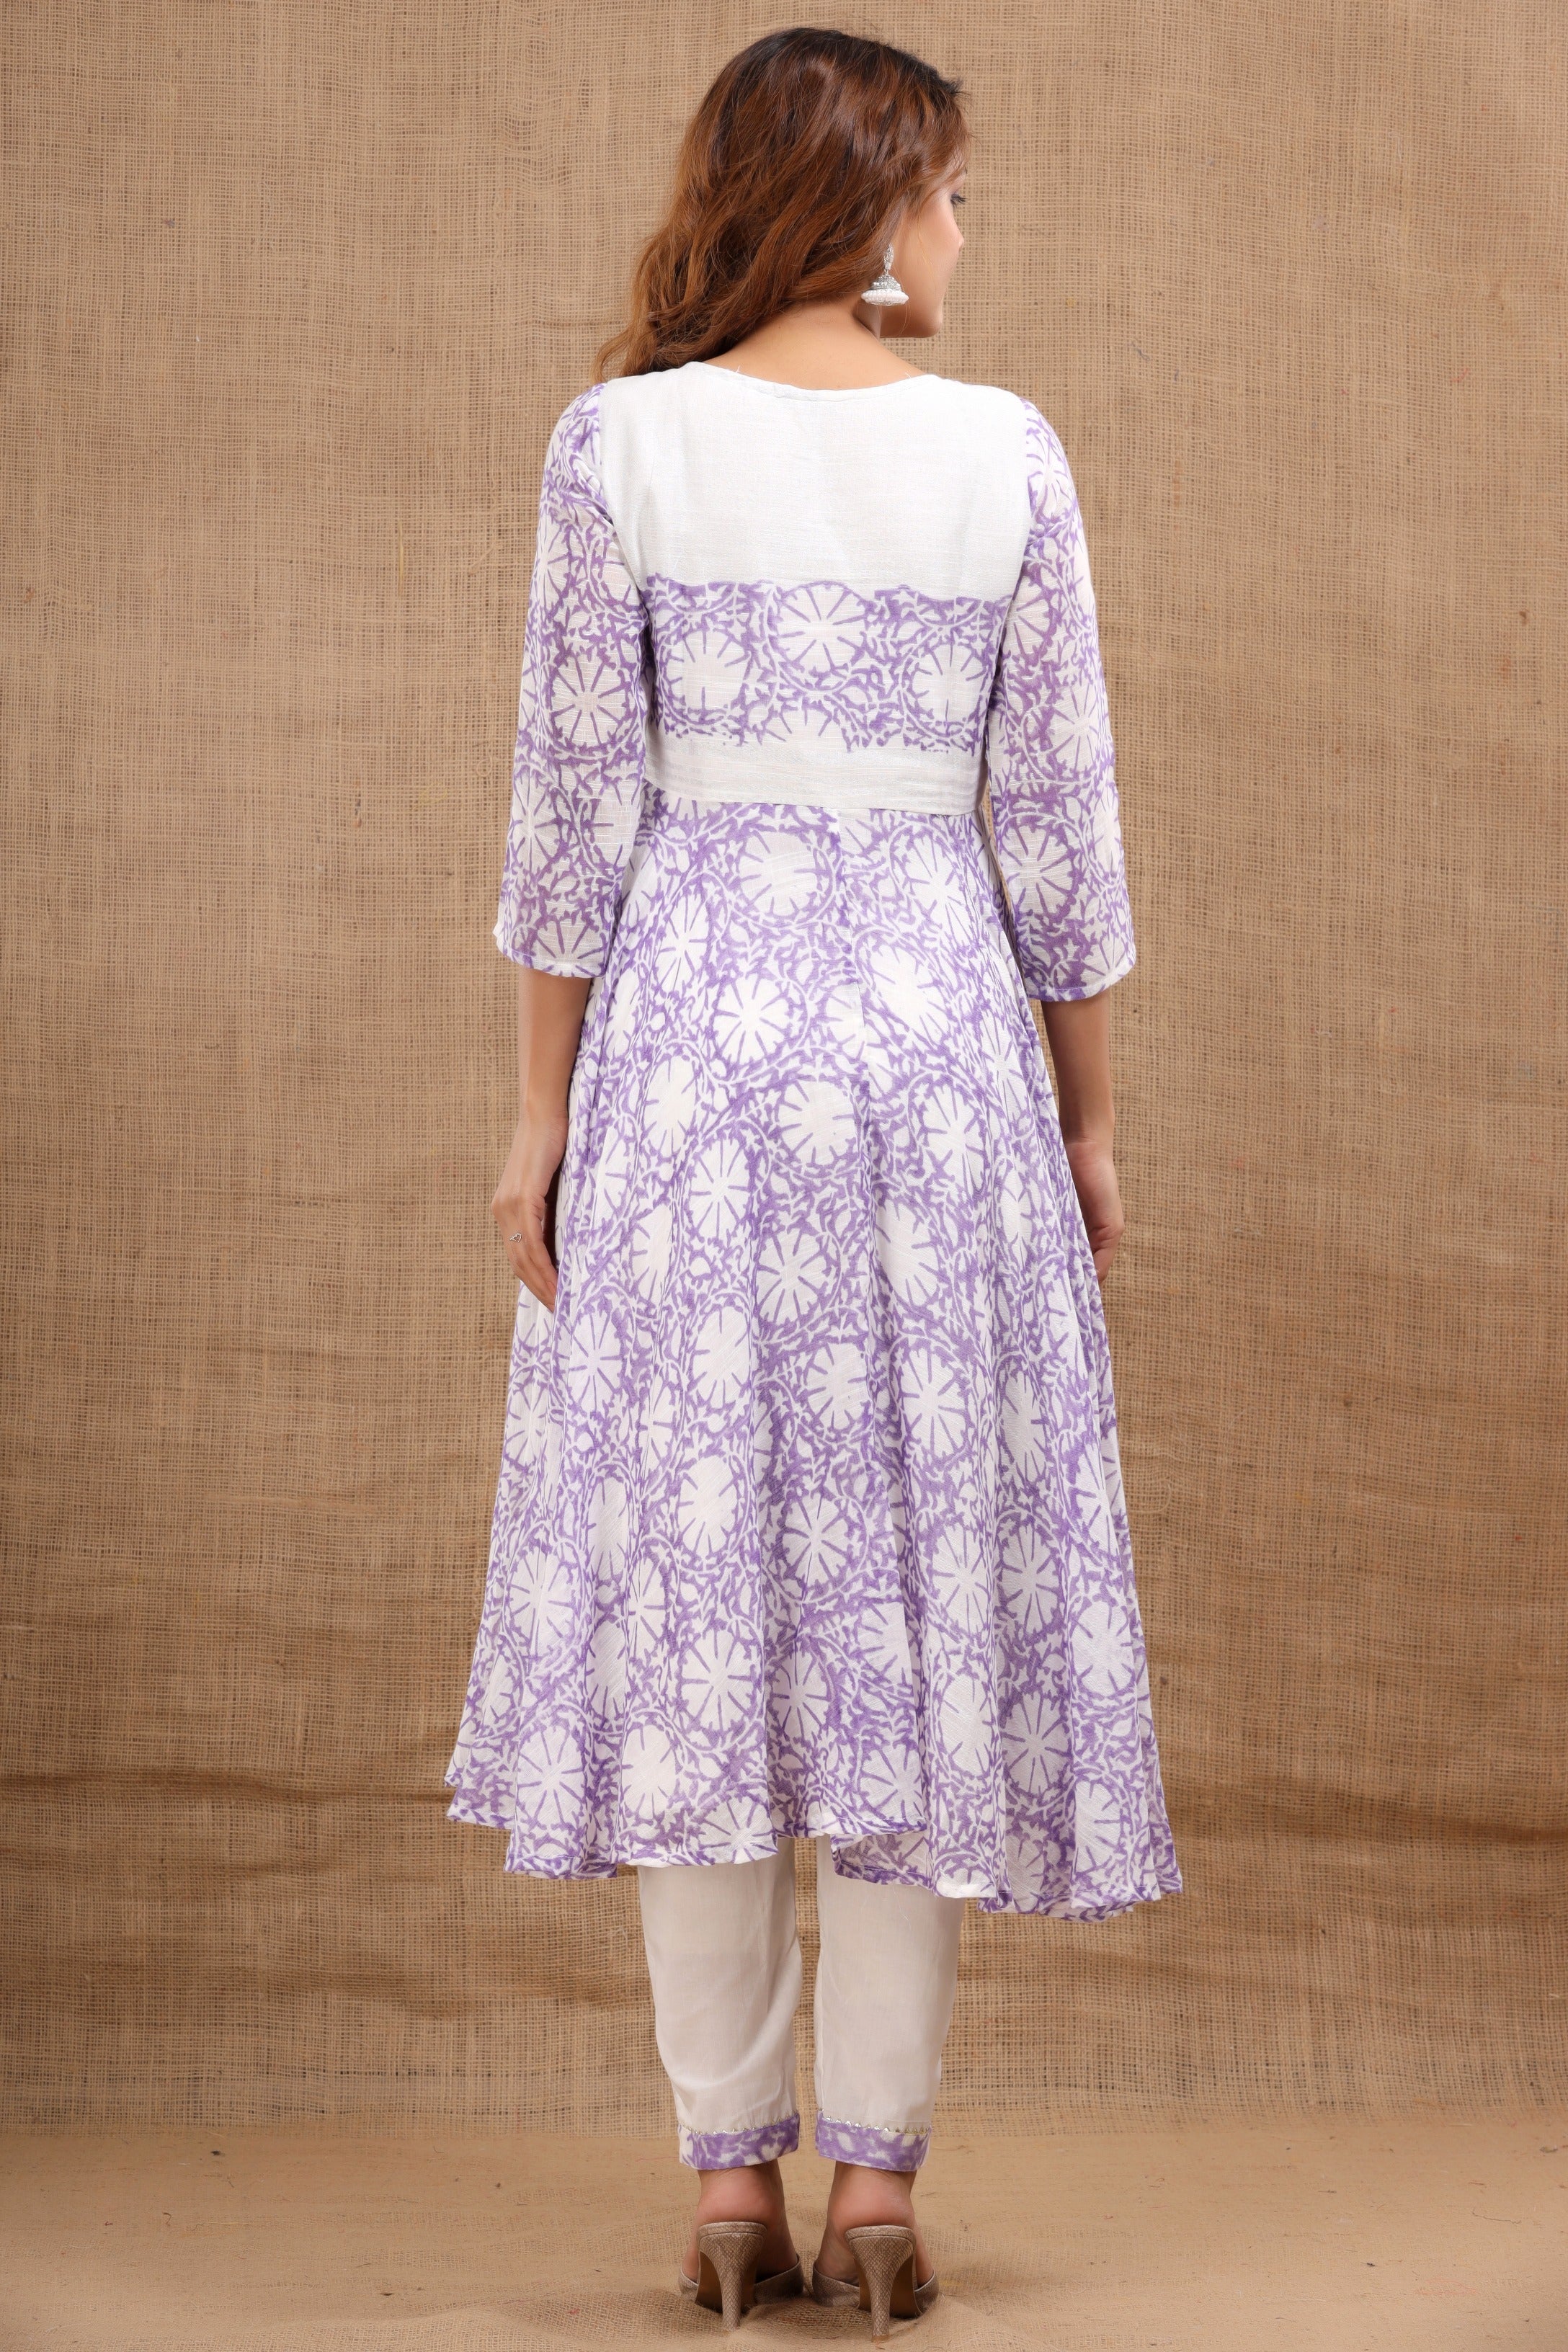 Women's Vrisa Cotton Gota Purple Suit With Dupatta Set - Saras The Label